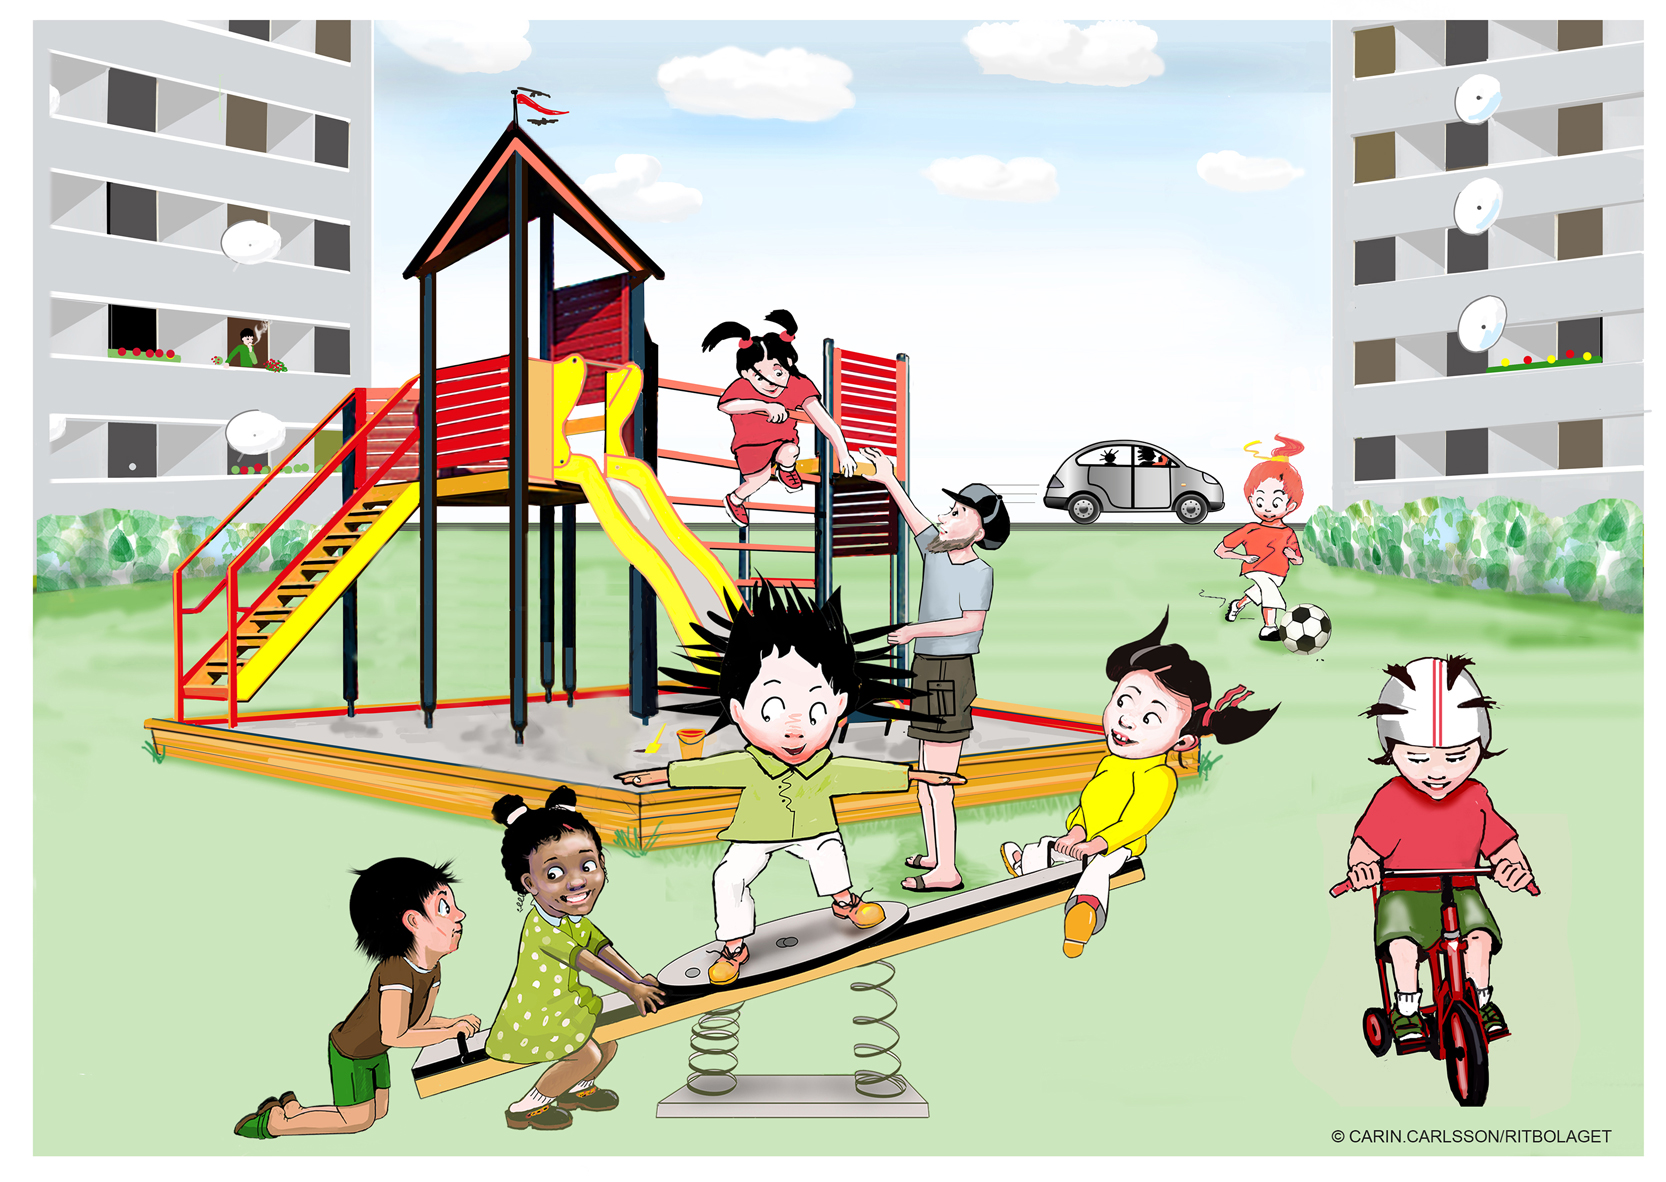 Barn leker på en lekplats mellan höga hus. Tre barn och trollet gungar på en gungbräda. Ett barn cyklar och ett barn leker med sin pappa i en klätterställning.